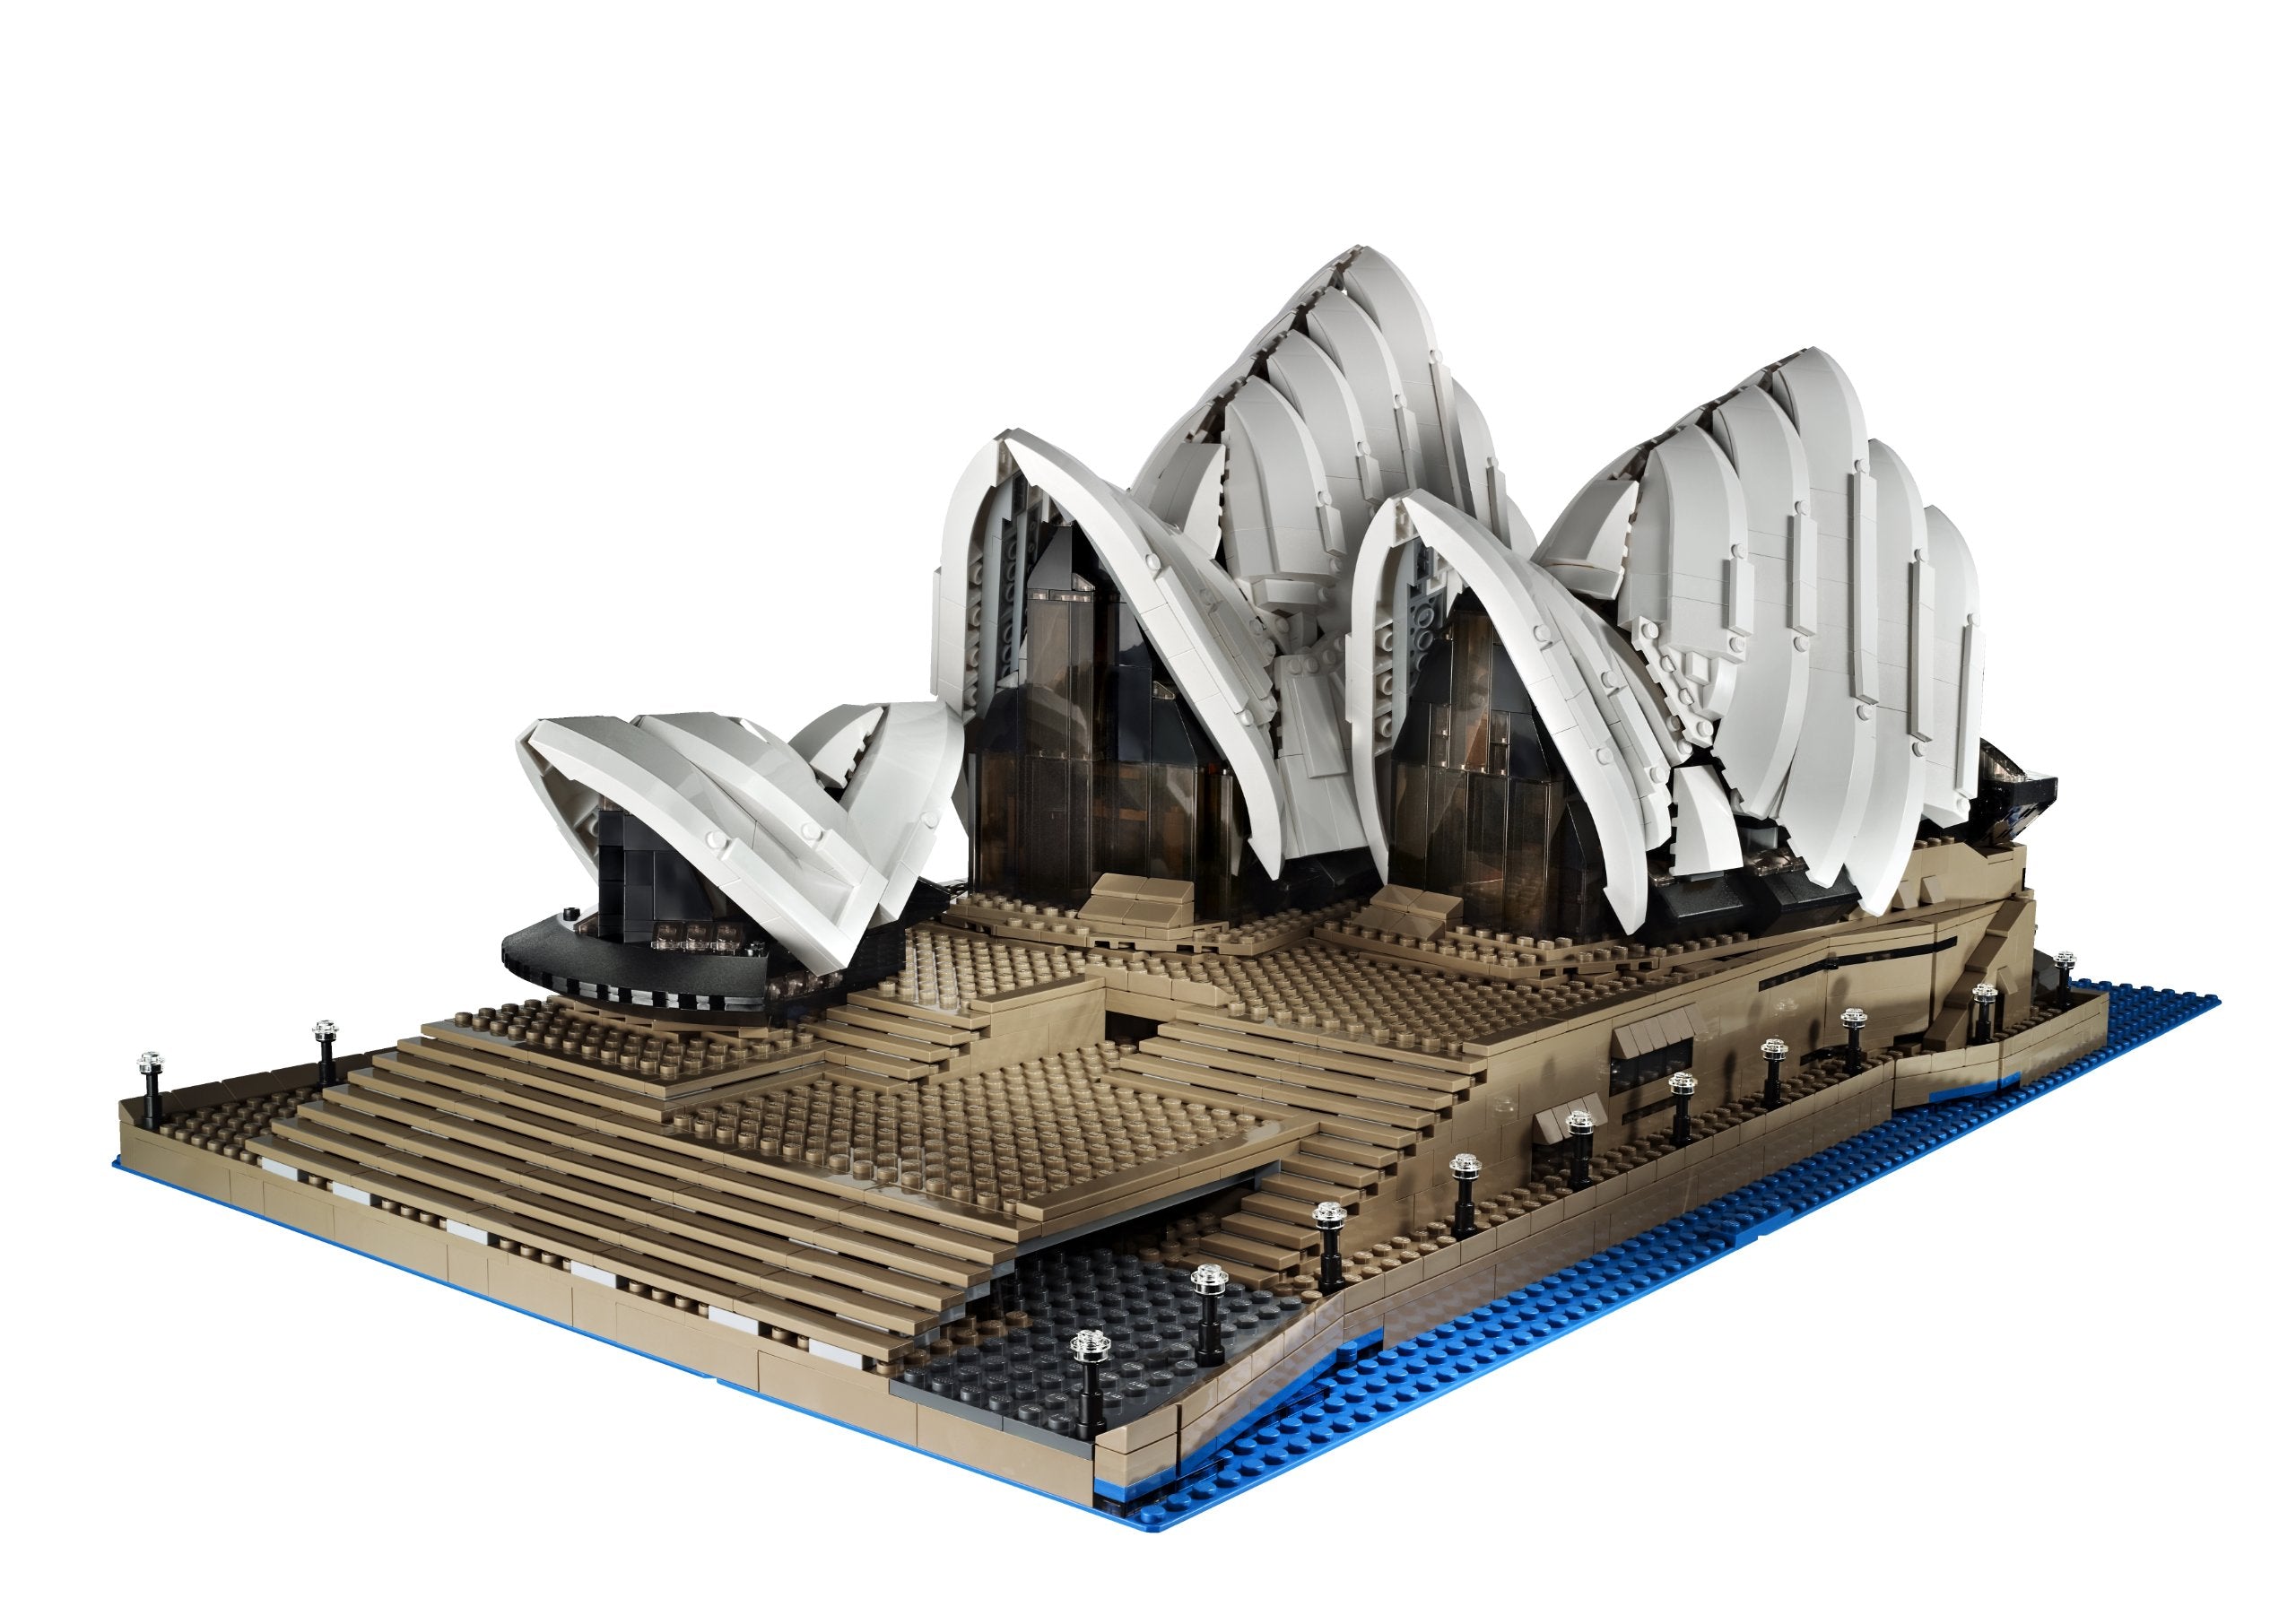 LEGO Creator Expert 10234 Sydney Opera House